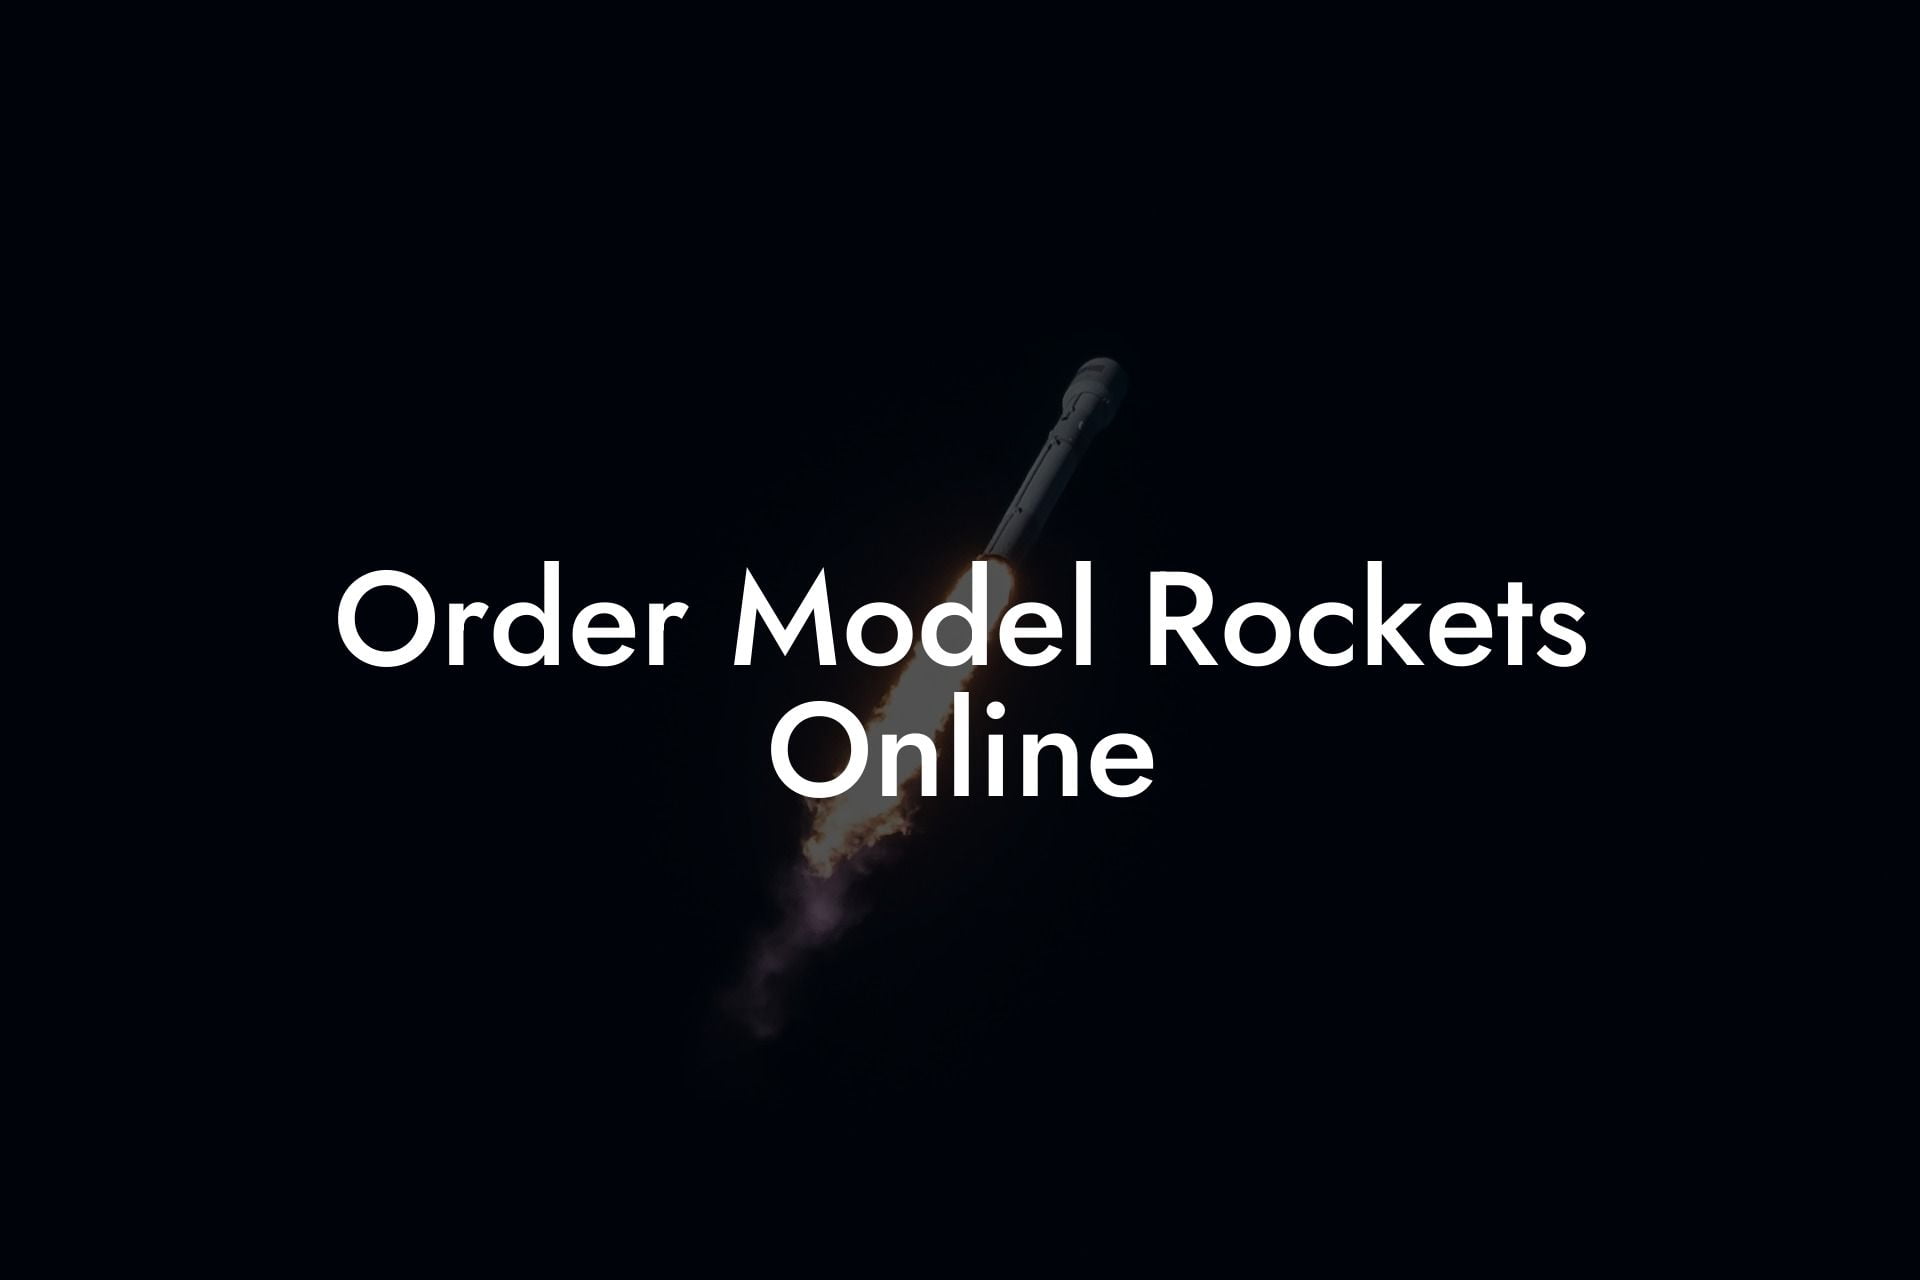 Order Model Rockets Online